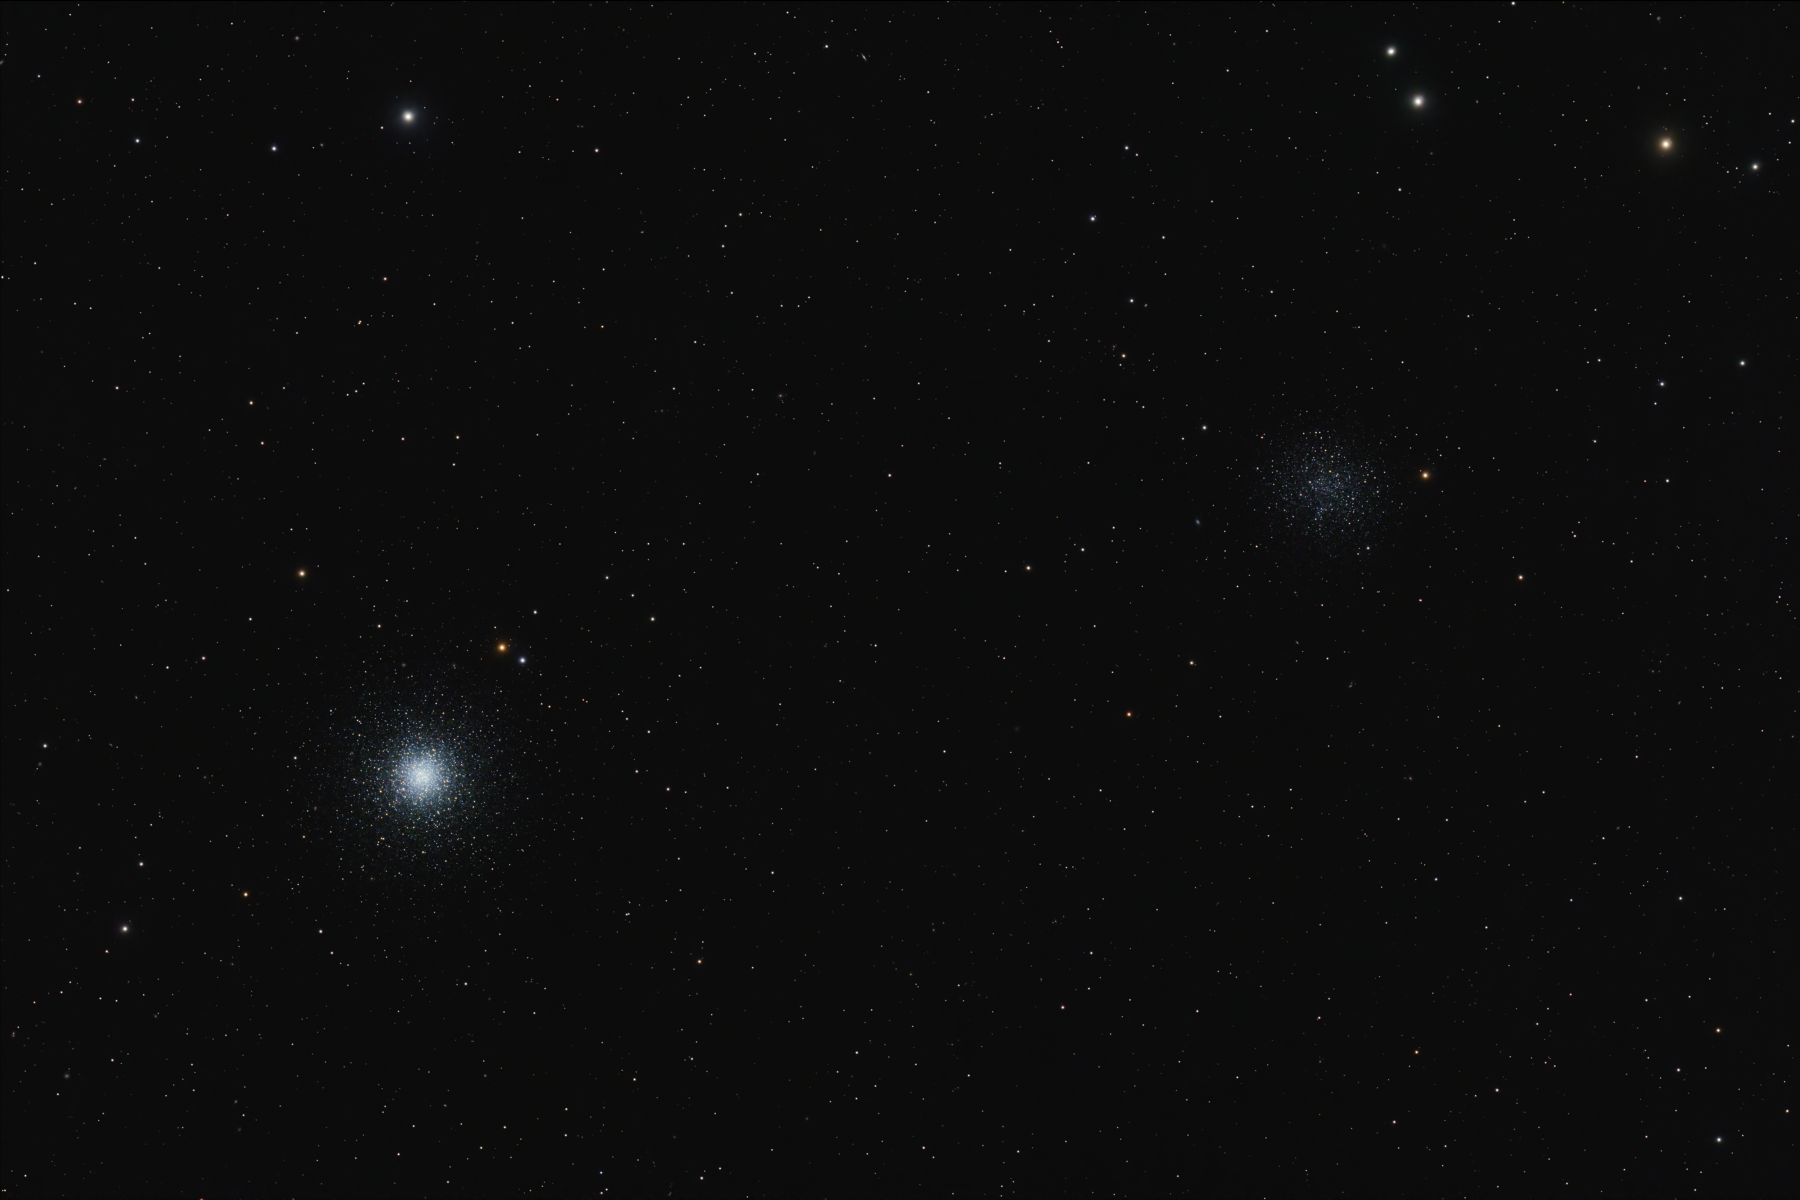 NGC 5024 and NGC 5053